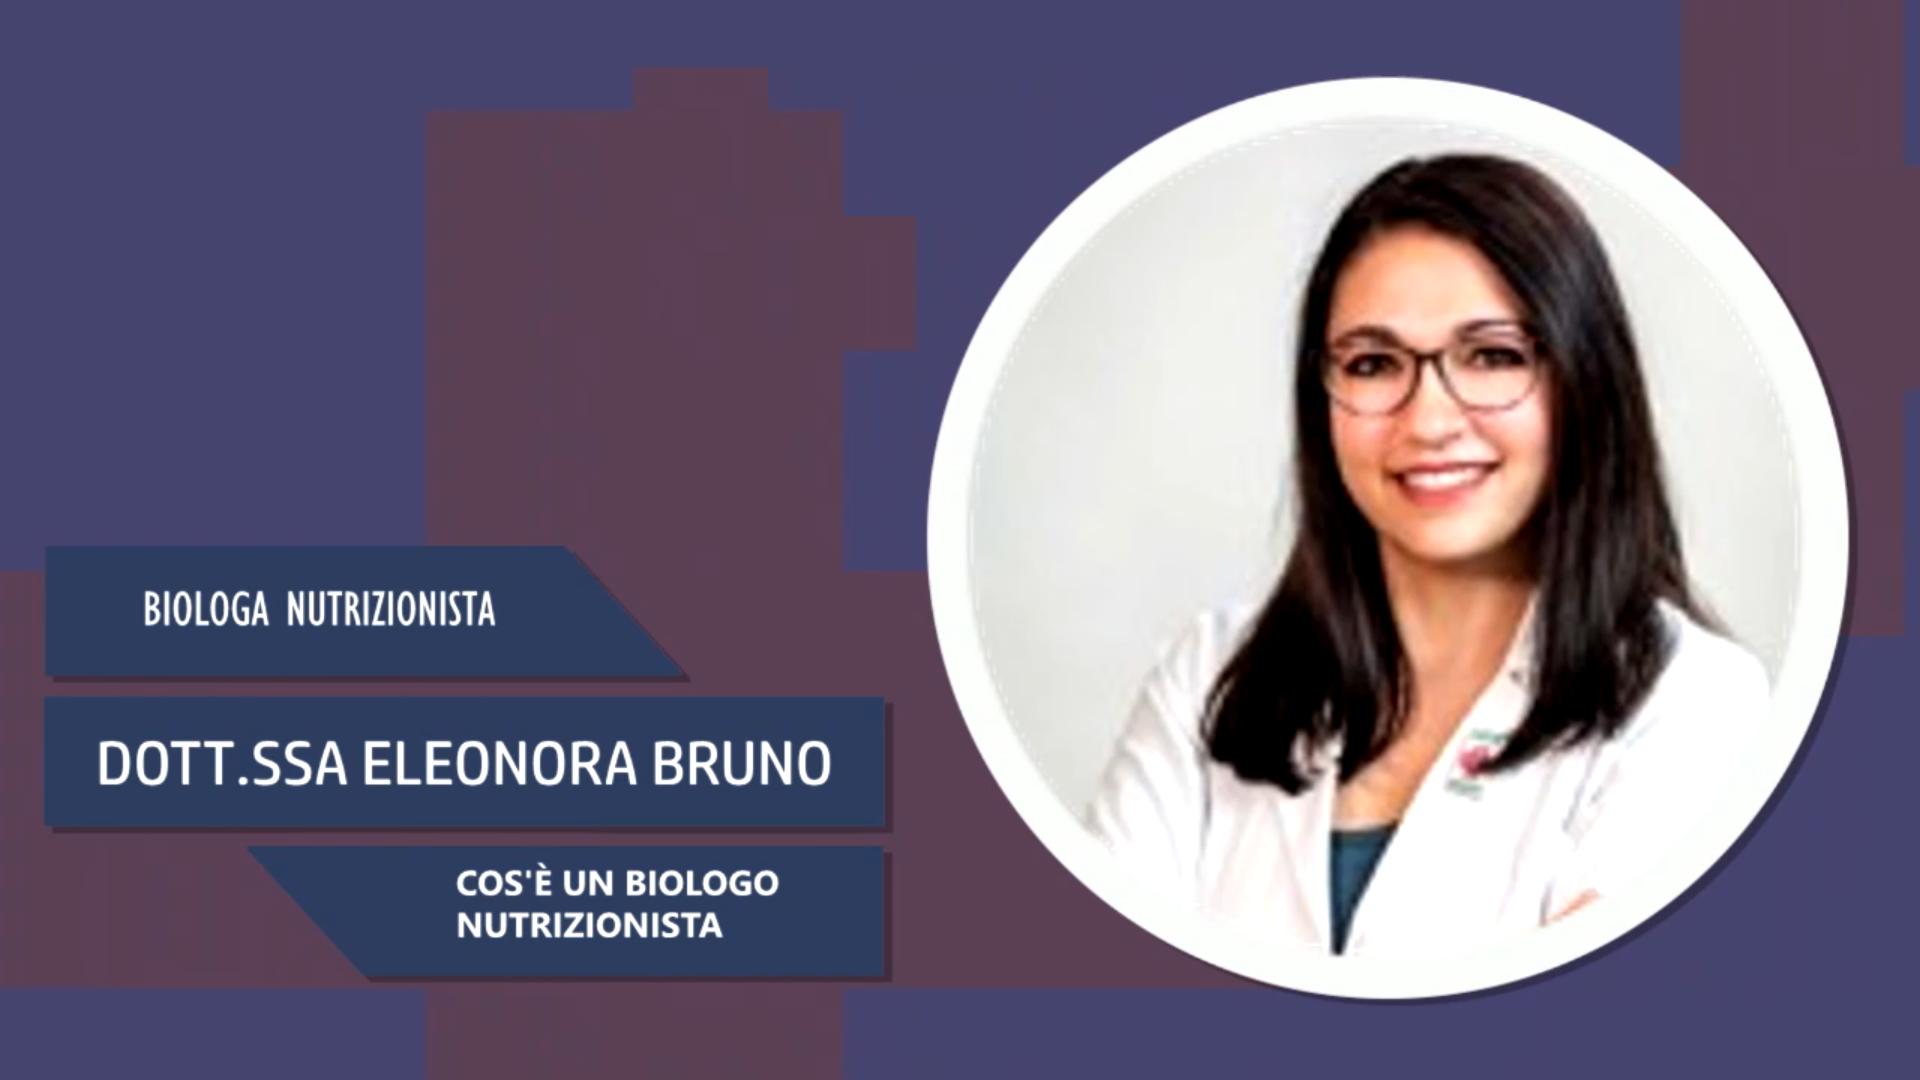 Intervista alla Dott.ssa Eleonora Bruno – Cos’è un biologo nutrizionista